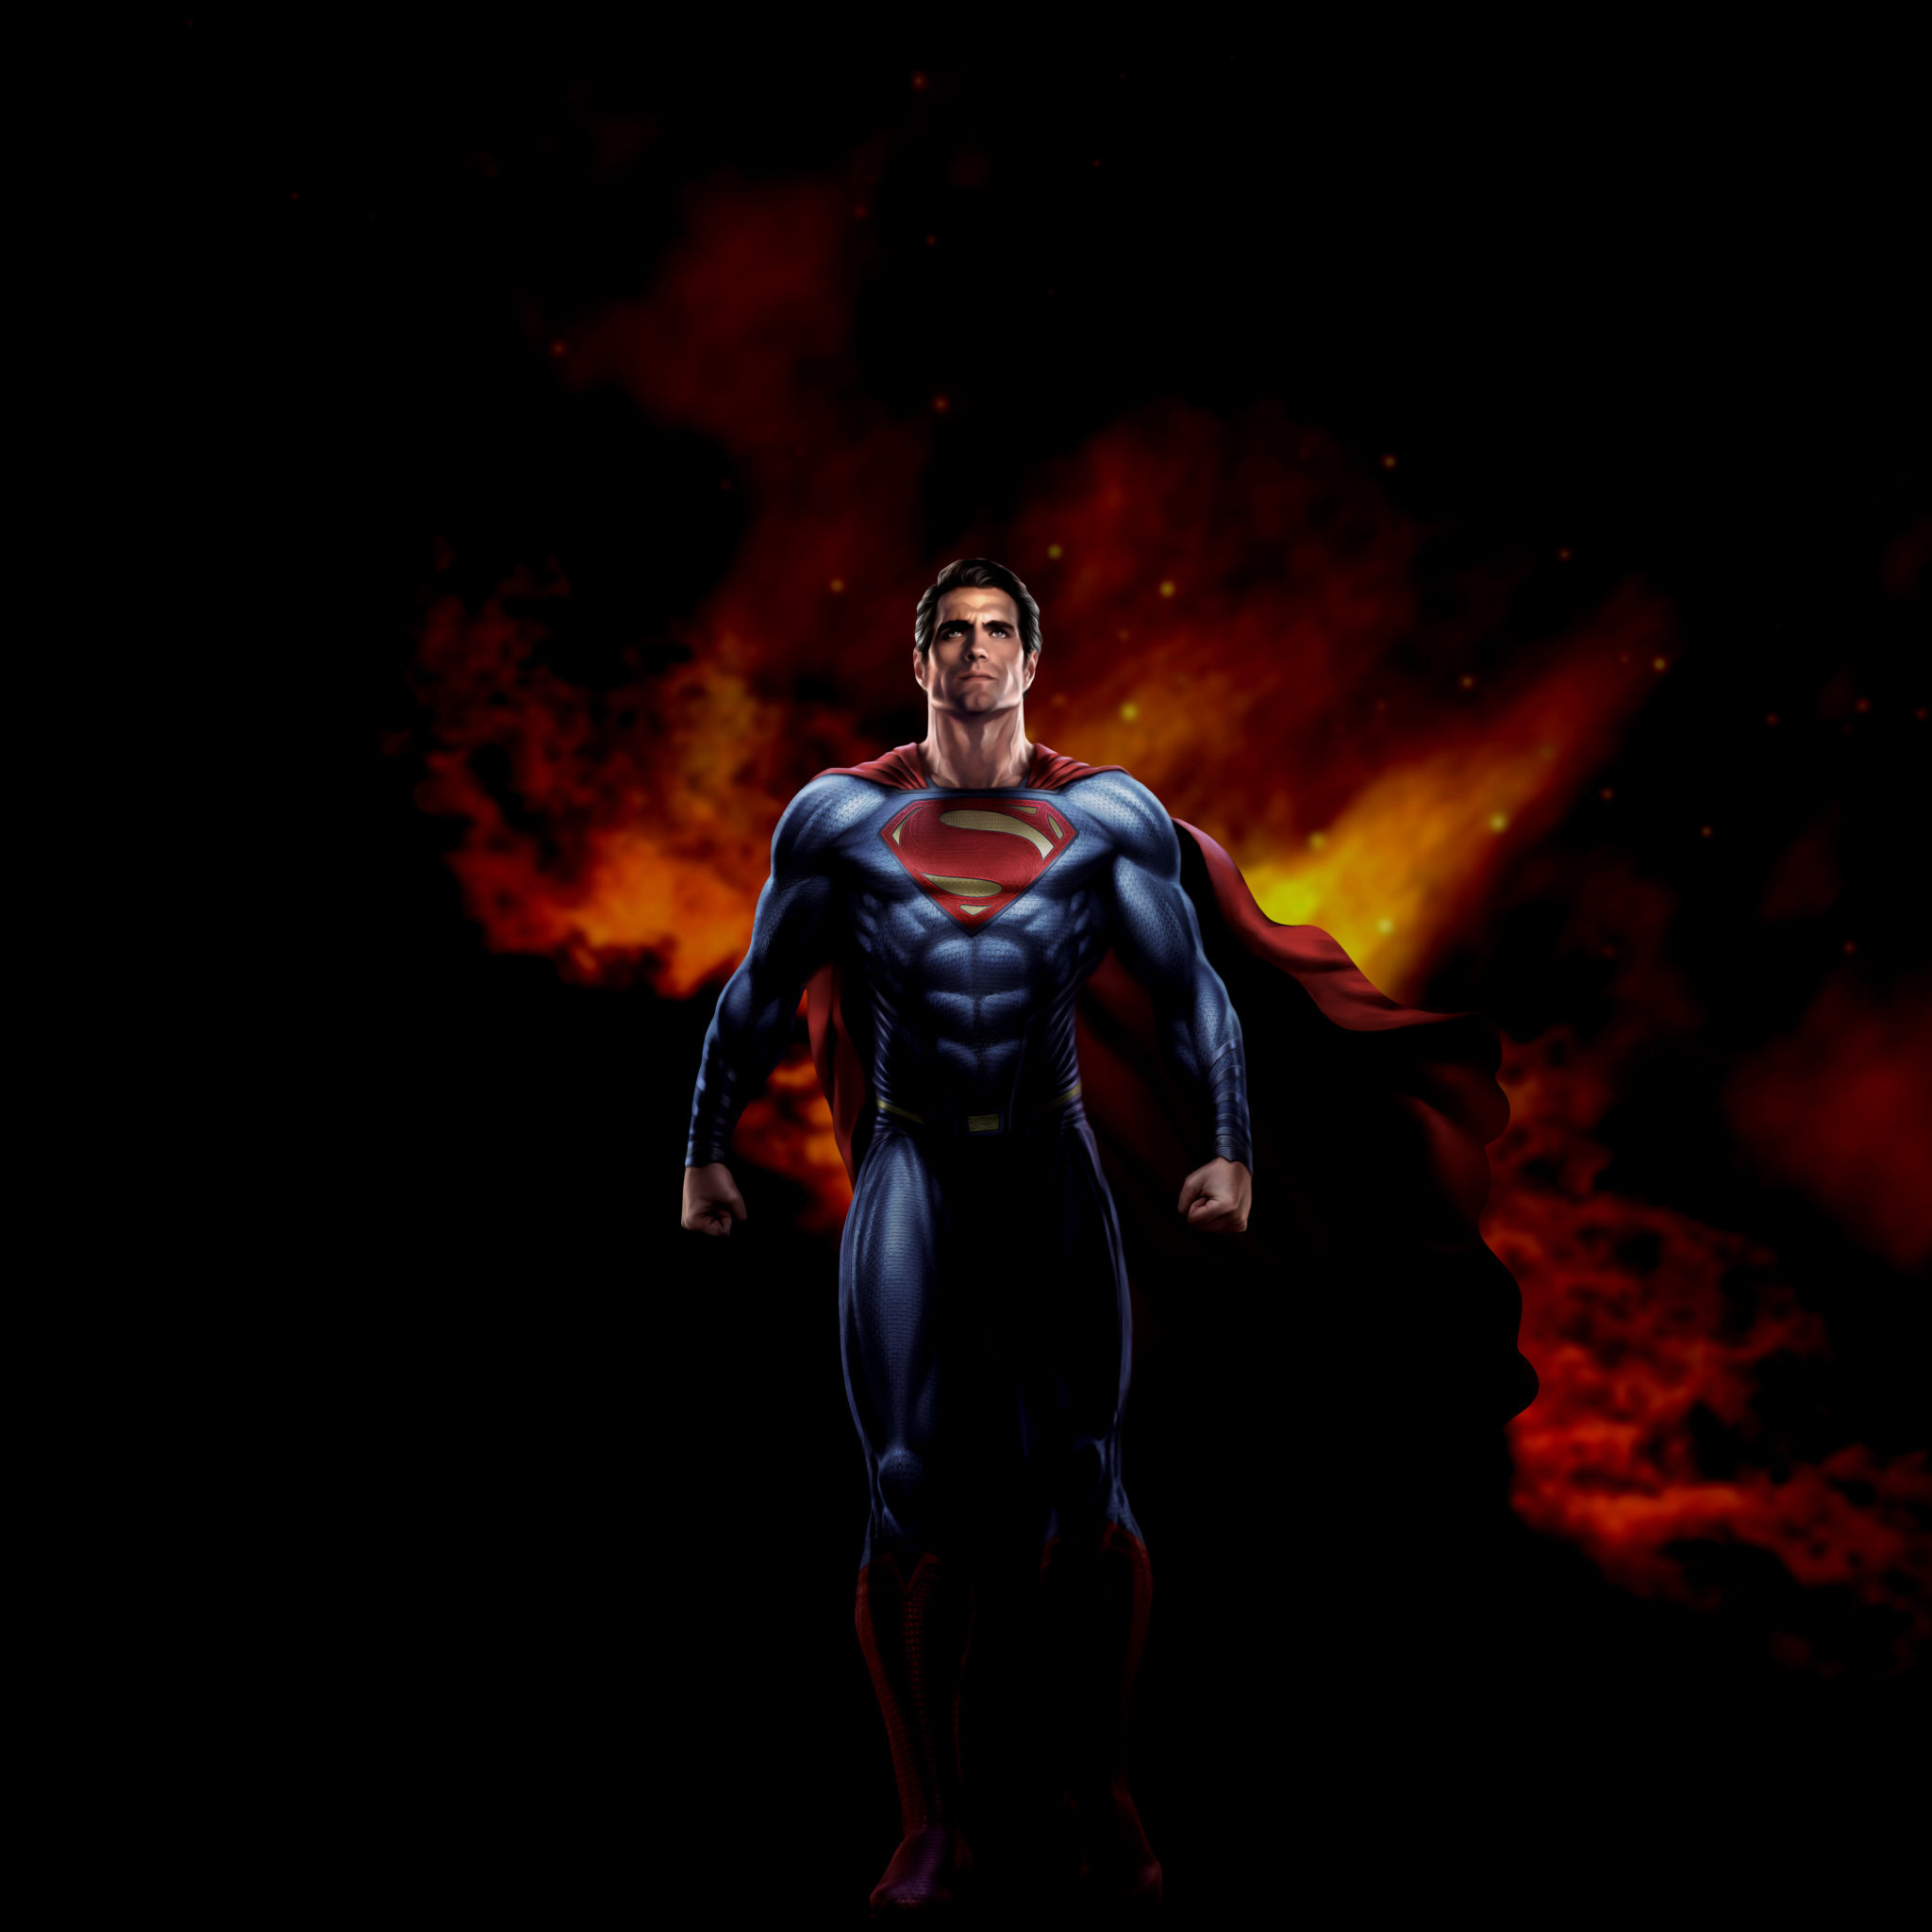 superhero wallpaper hd,superhéroe,superhombre,personaje de ficción,liga de la justicia,figura de acción